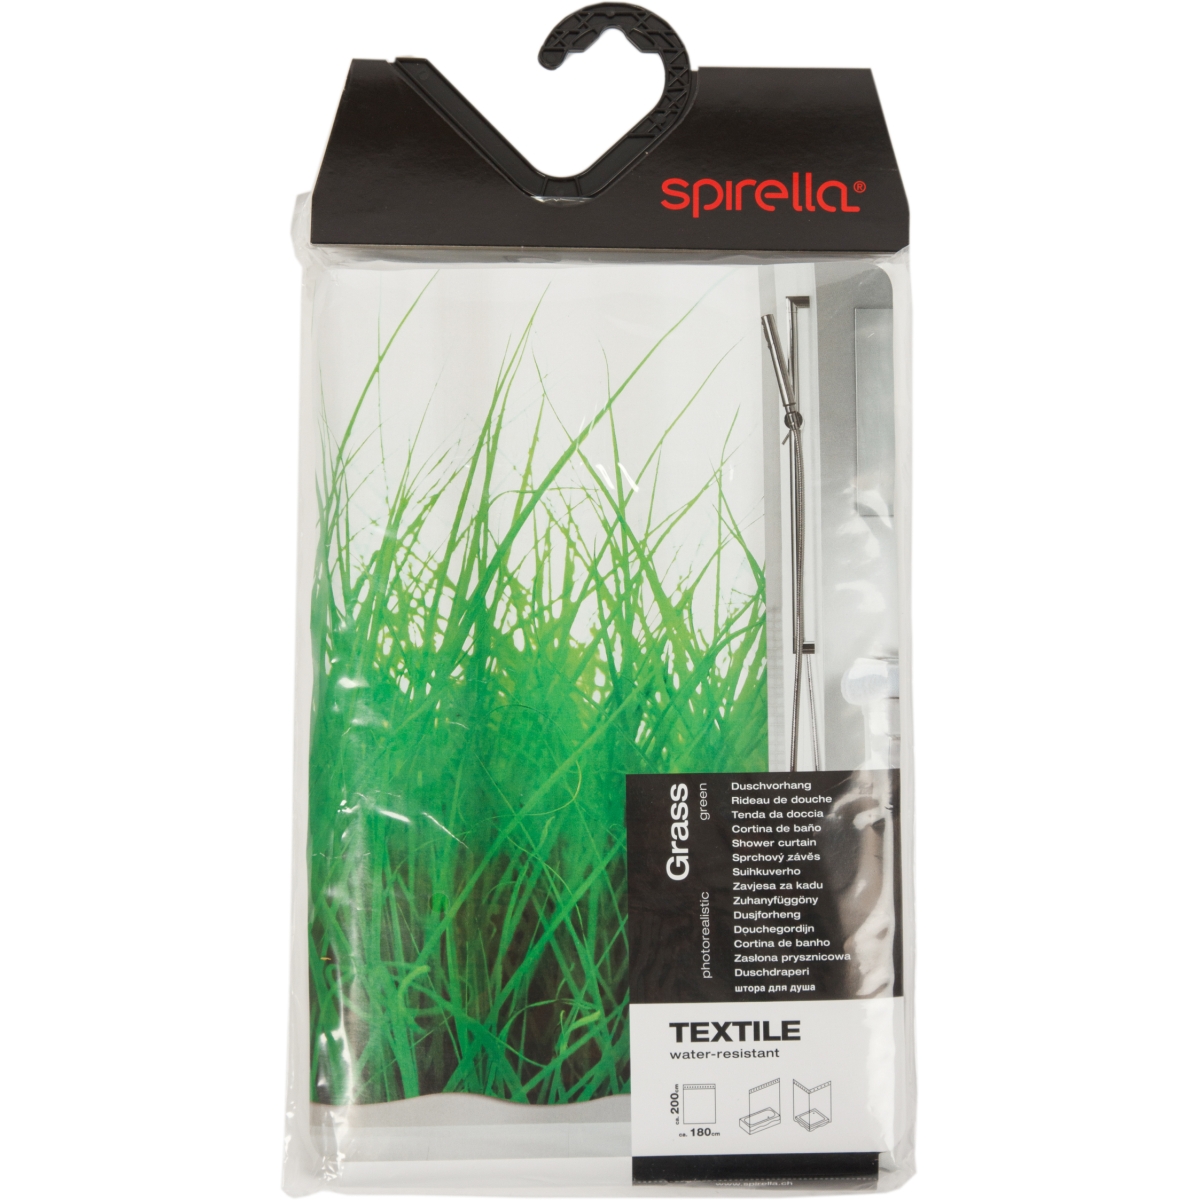    Grass (Spirella 1016404)